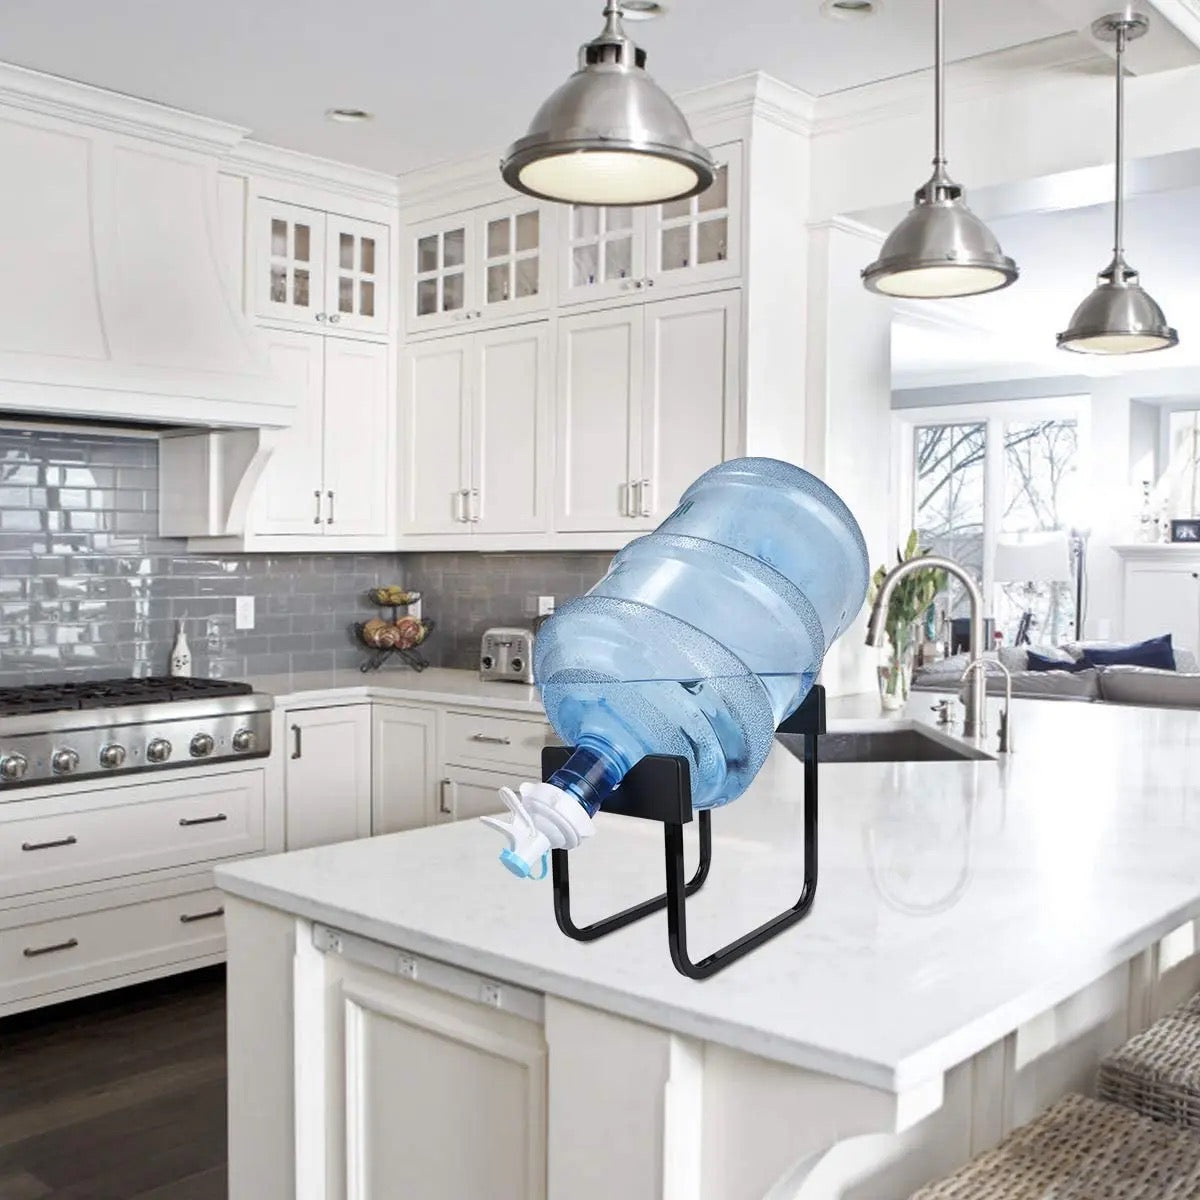 Water Bottle Dispenser Stand in kitchen